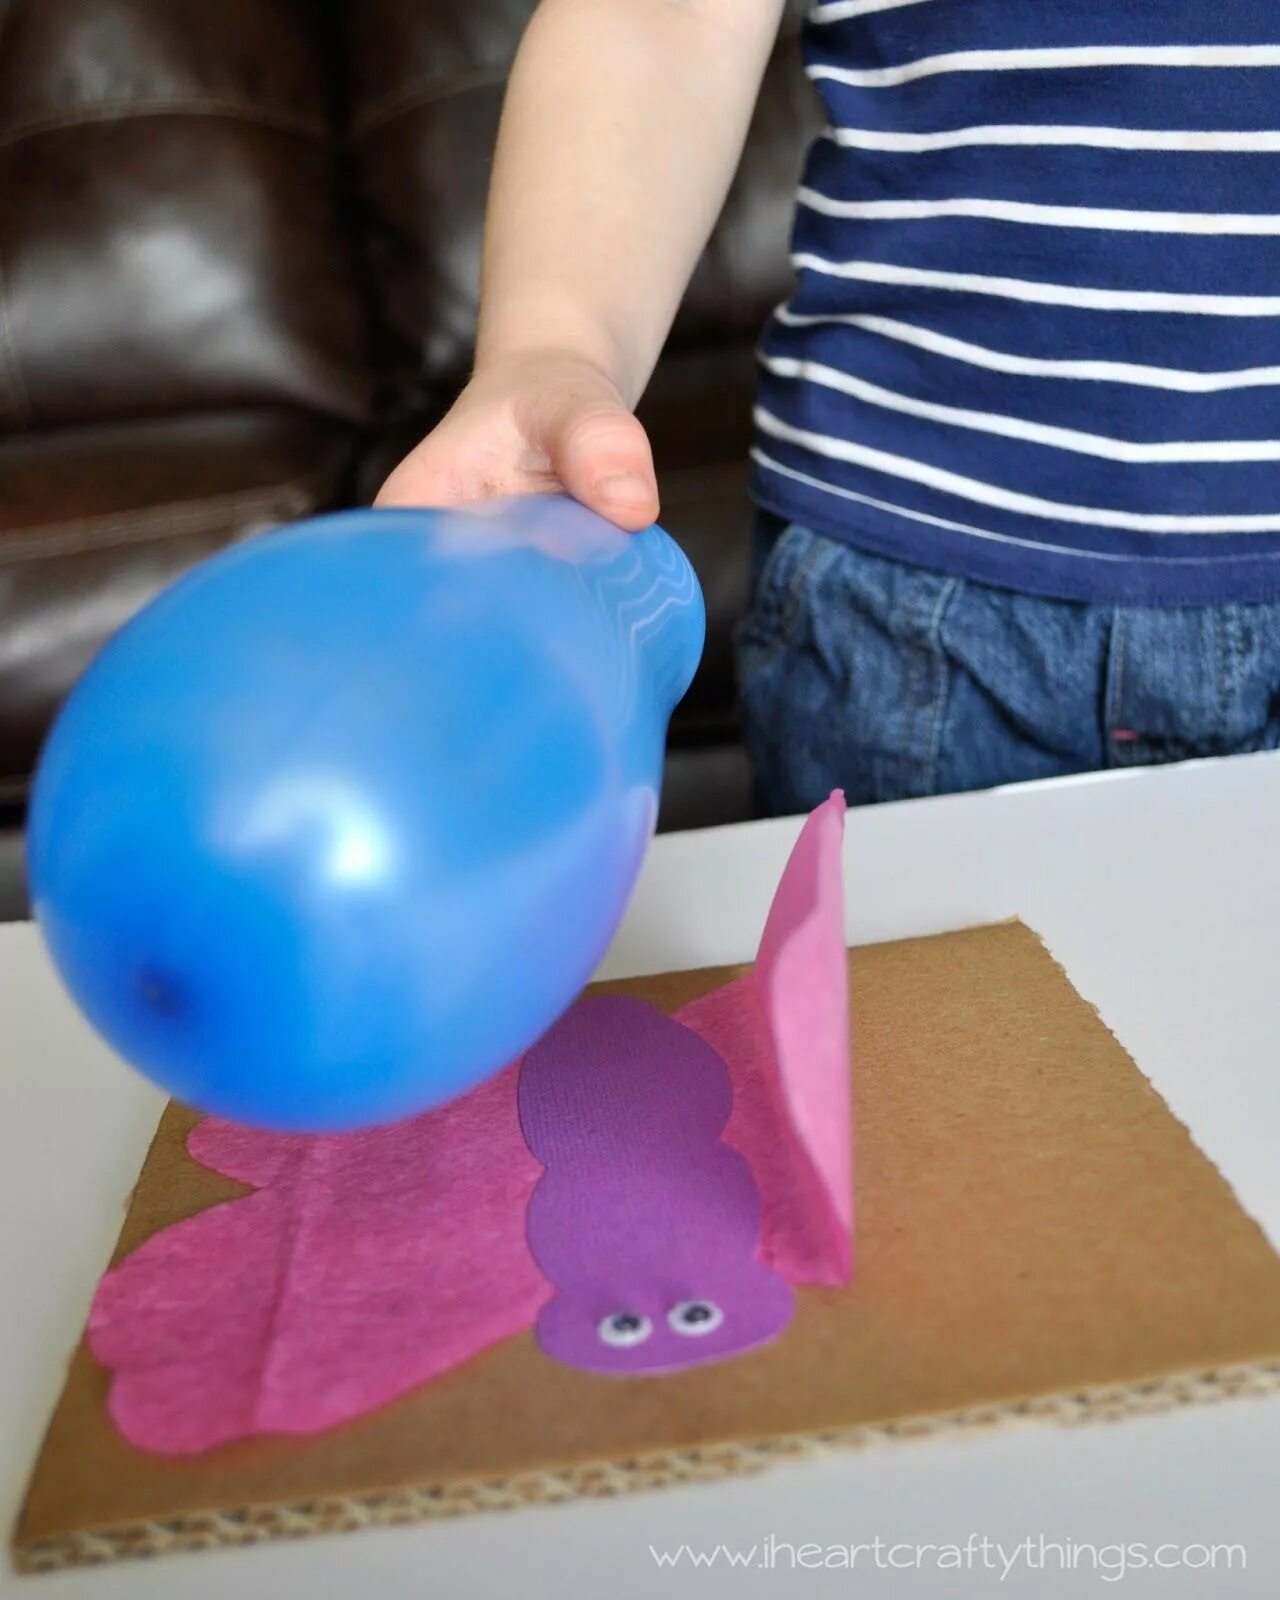 Опыт с воздушным шариком. Опыты со статическим электричеством. Экспериментирование с воздушным шариком для детей. Статическое электричество опыты для детей.